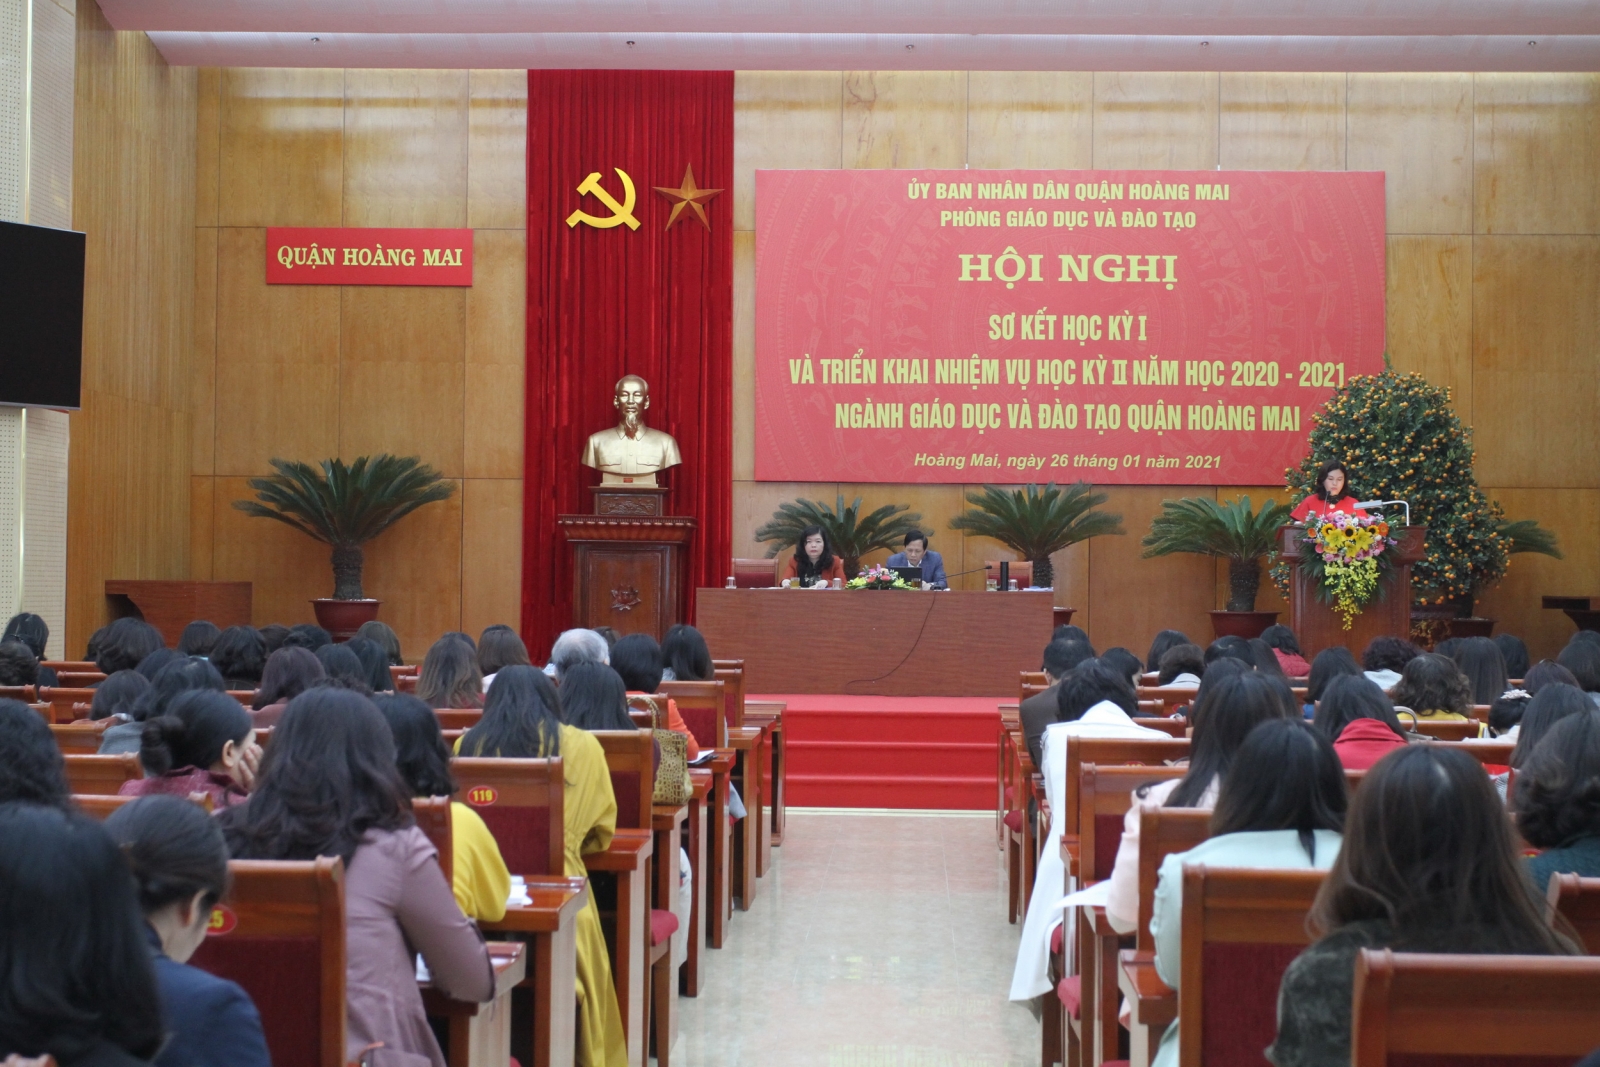 Hà Nội: Quận Hoàng Mai tiếp tục đầu tư bổ sung trường, lớp học - Ảnh minh hoạ 2